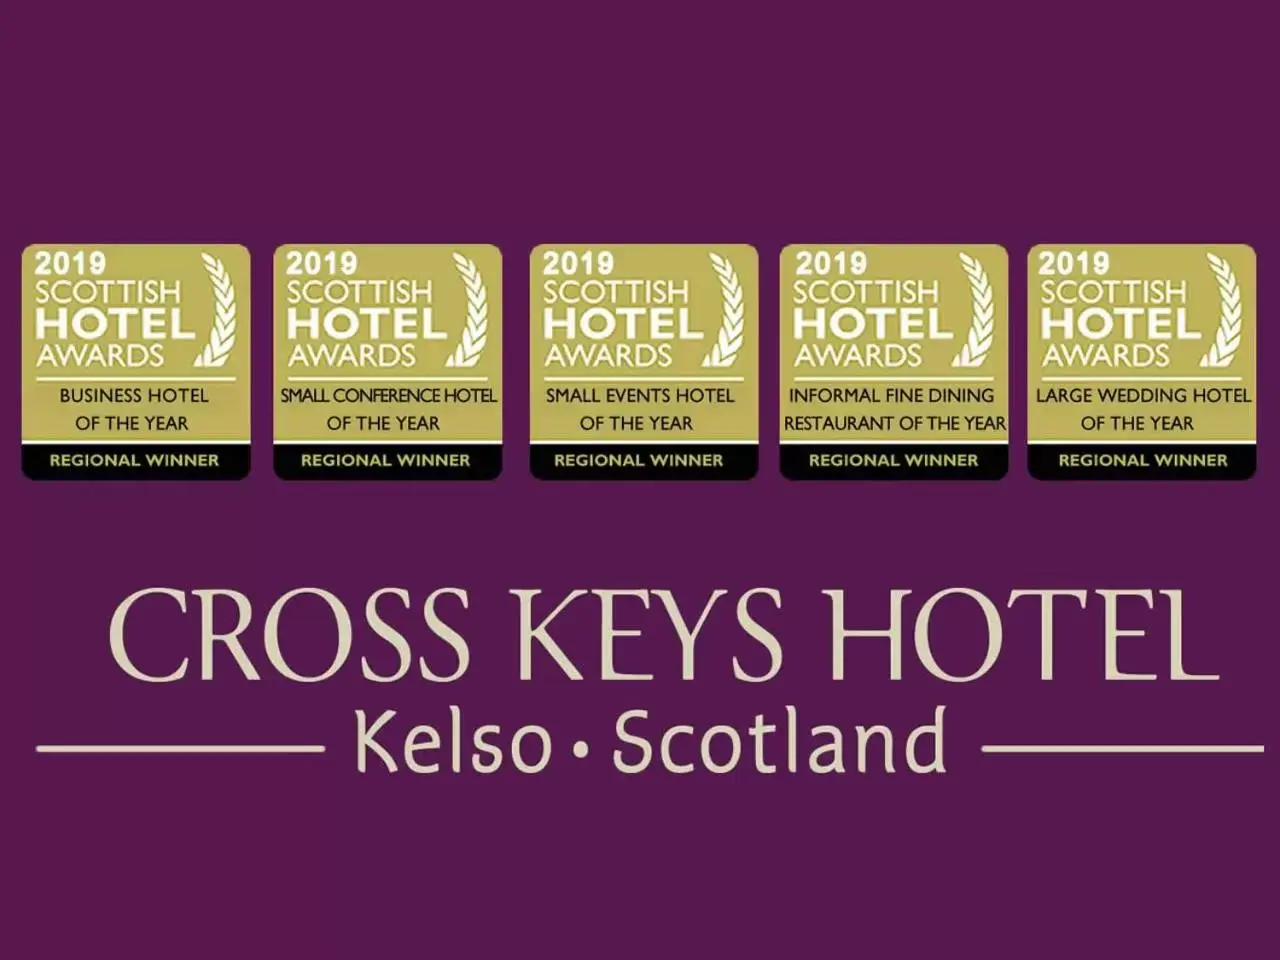 Certificate/Award in Cross Keys Hotel, Kelso